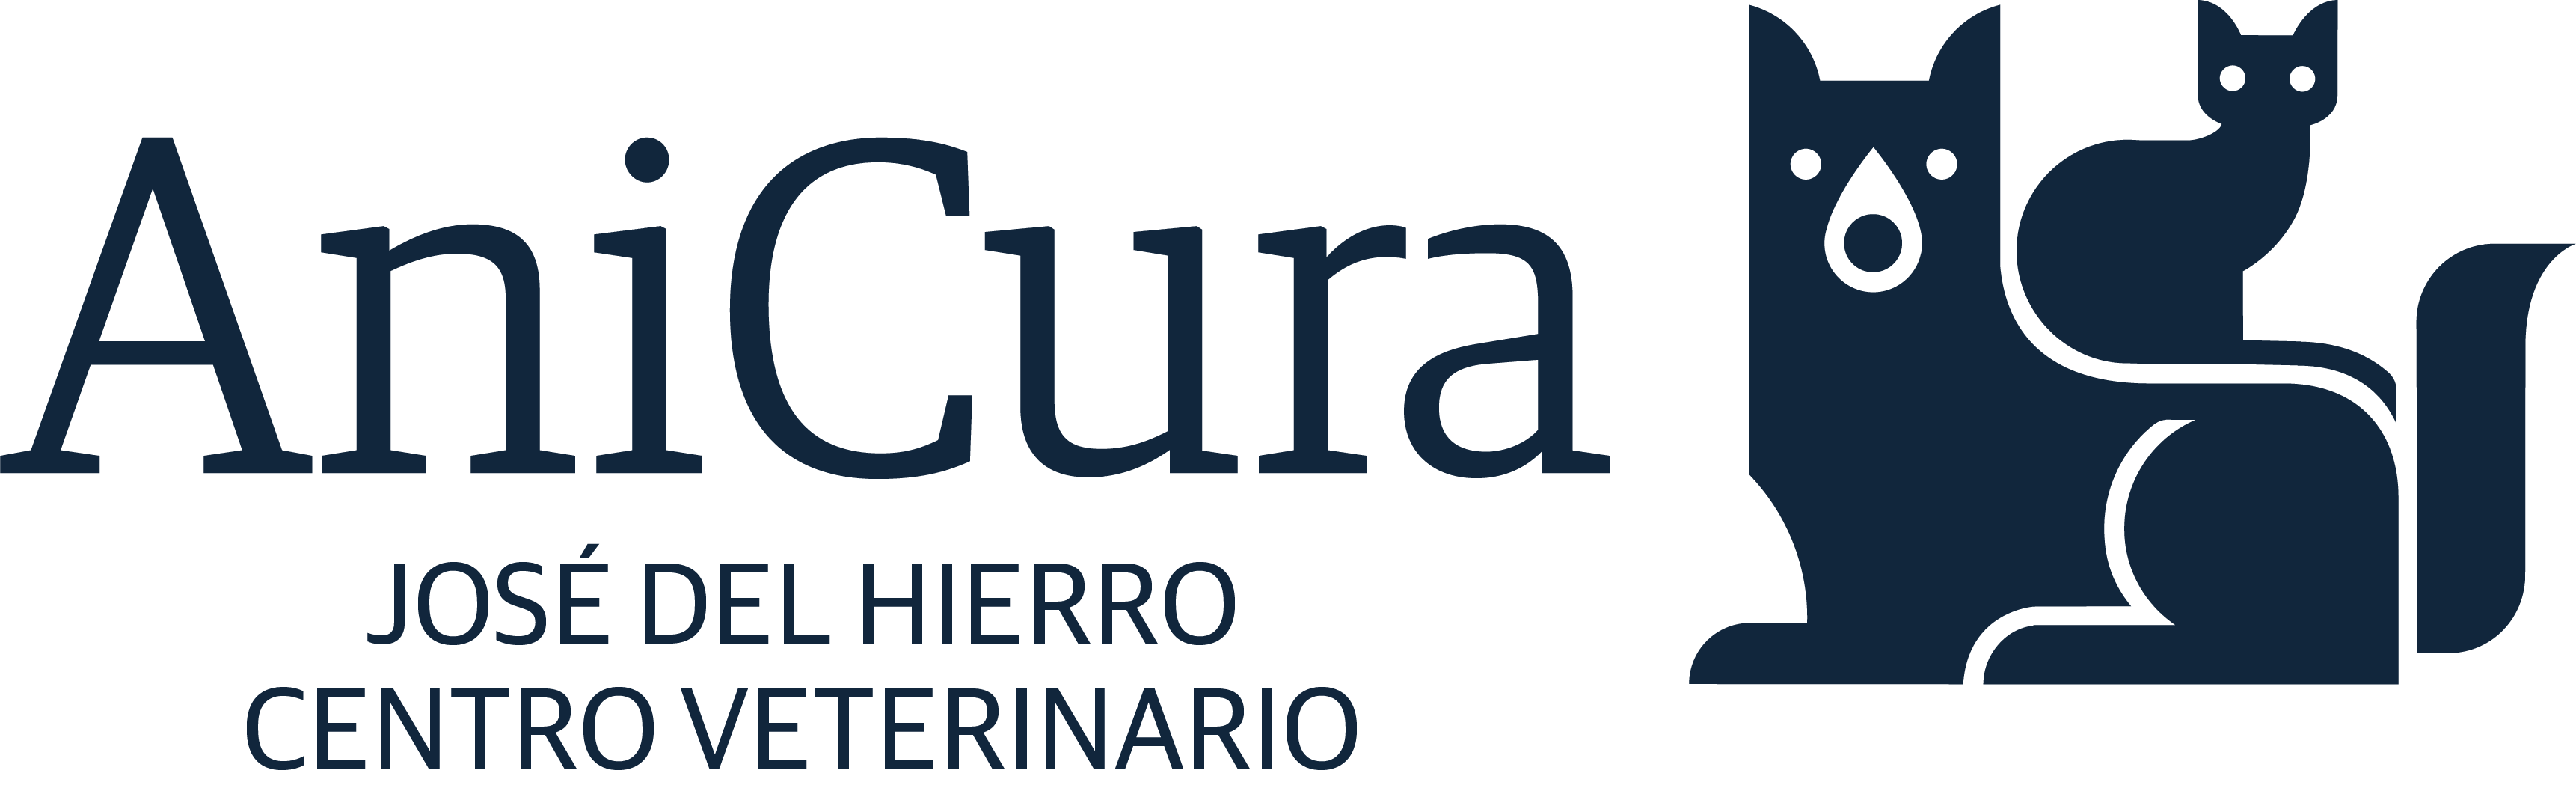 AniCura José del Hierro Centro Veterinario logo